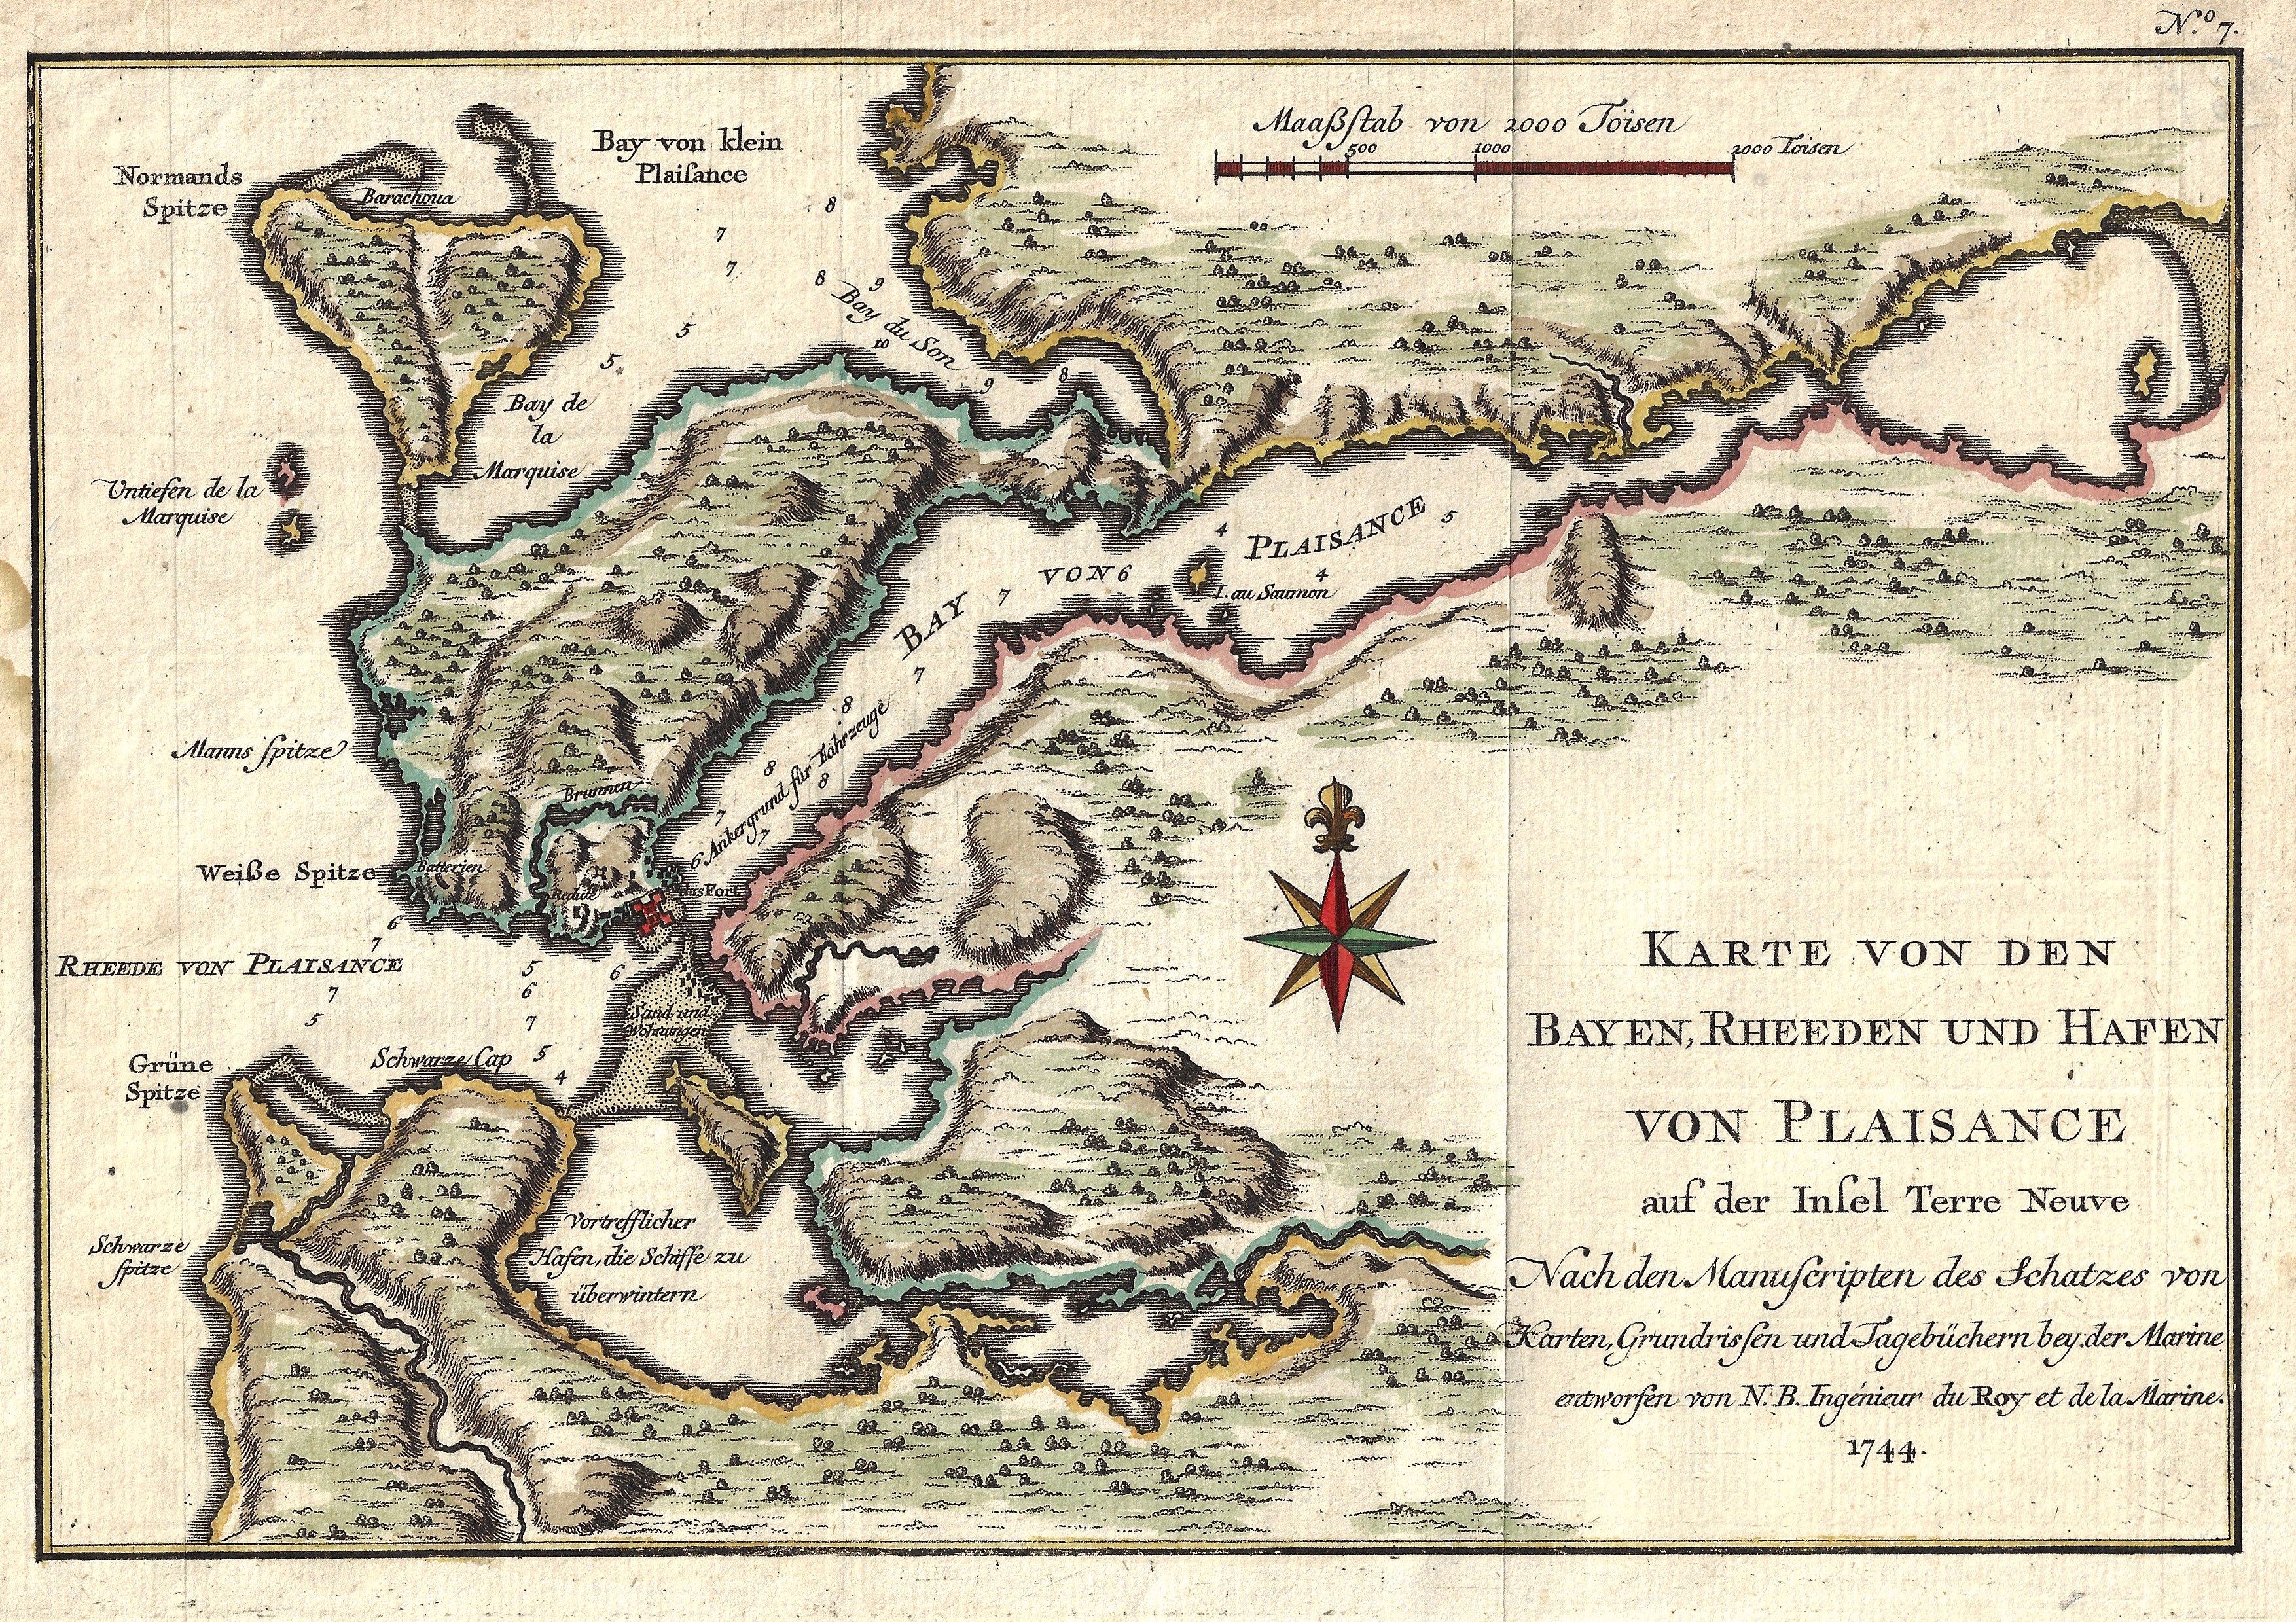 Bellin/Arkstee & Mercus Jacques Nicolas Karte von den Bayen, Rheeden und Hafen von Plaisance auf der Insel Terre Neuve